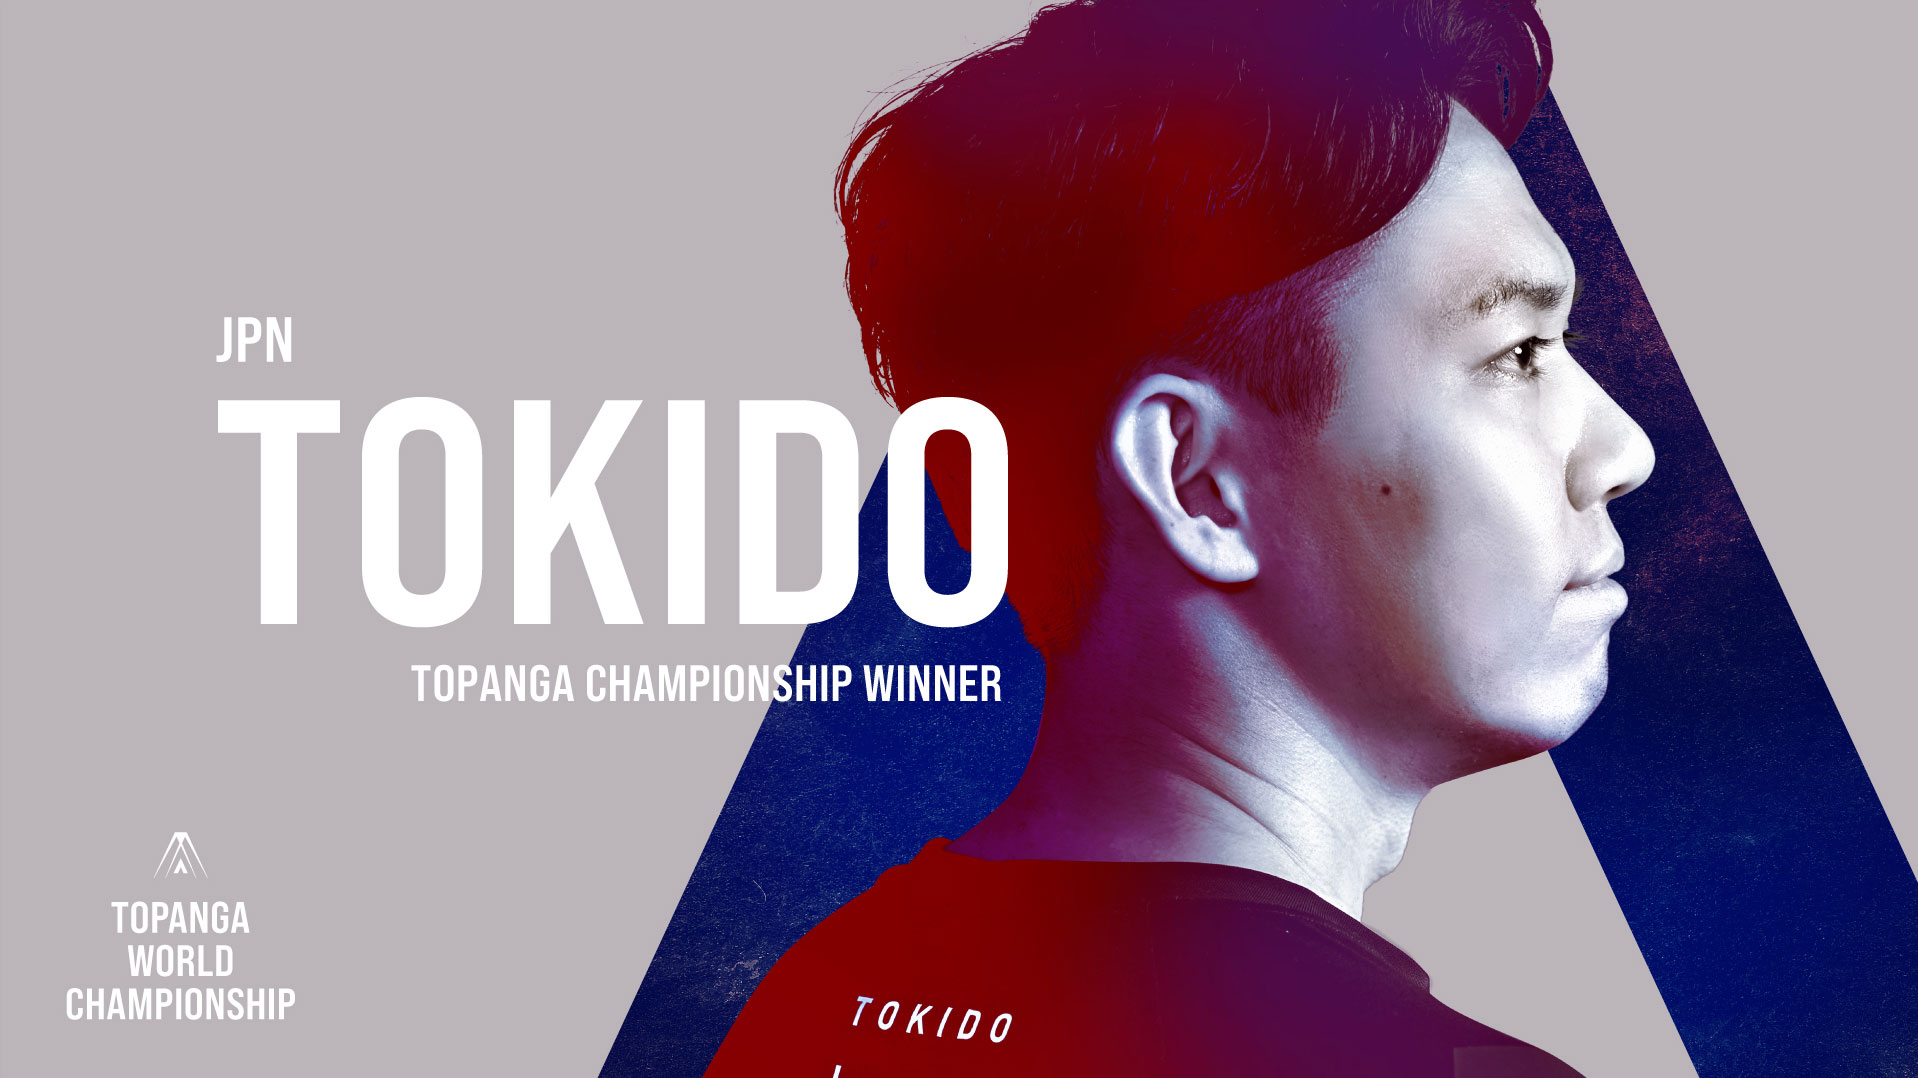 TOKIDO|TOPANGA CHAMPIONSHIP WINNER